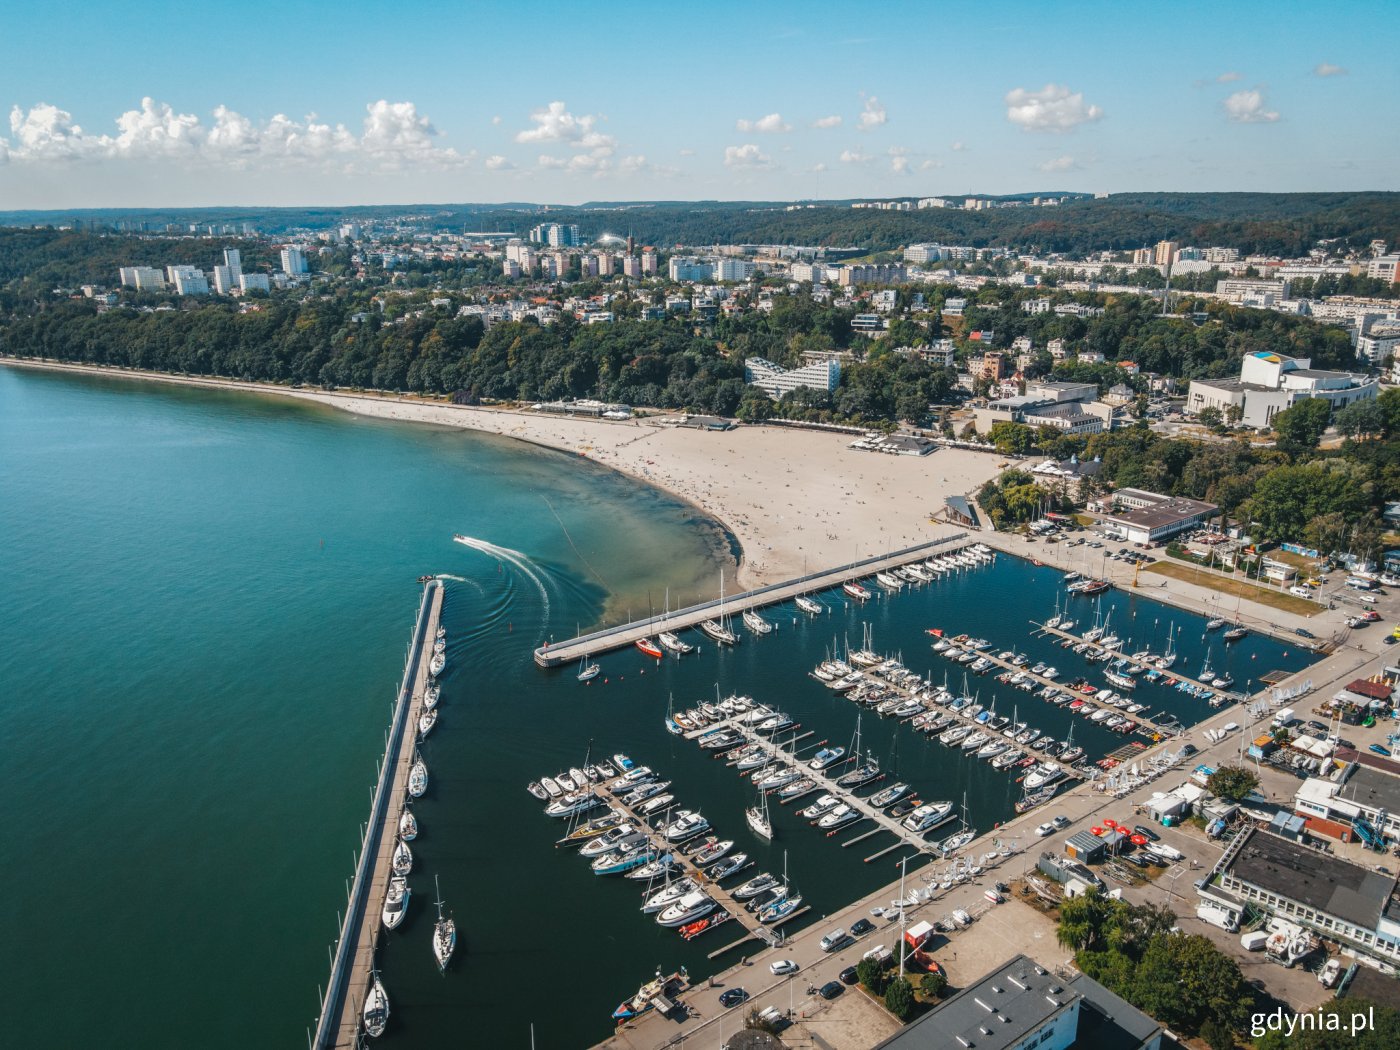 Gdyńska plaża w Śródmieściu - z daleka w pobliżu brzegu widoczne są zakwity sinic, które uniemożliwiają kąpiel. To sezonowe zjawisko, które w tym roku przypadło wyjątkowo późno, fot. Marcin Mielewski